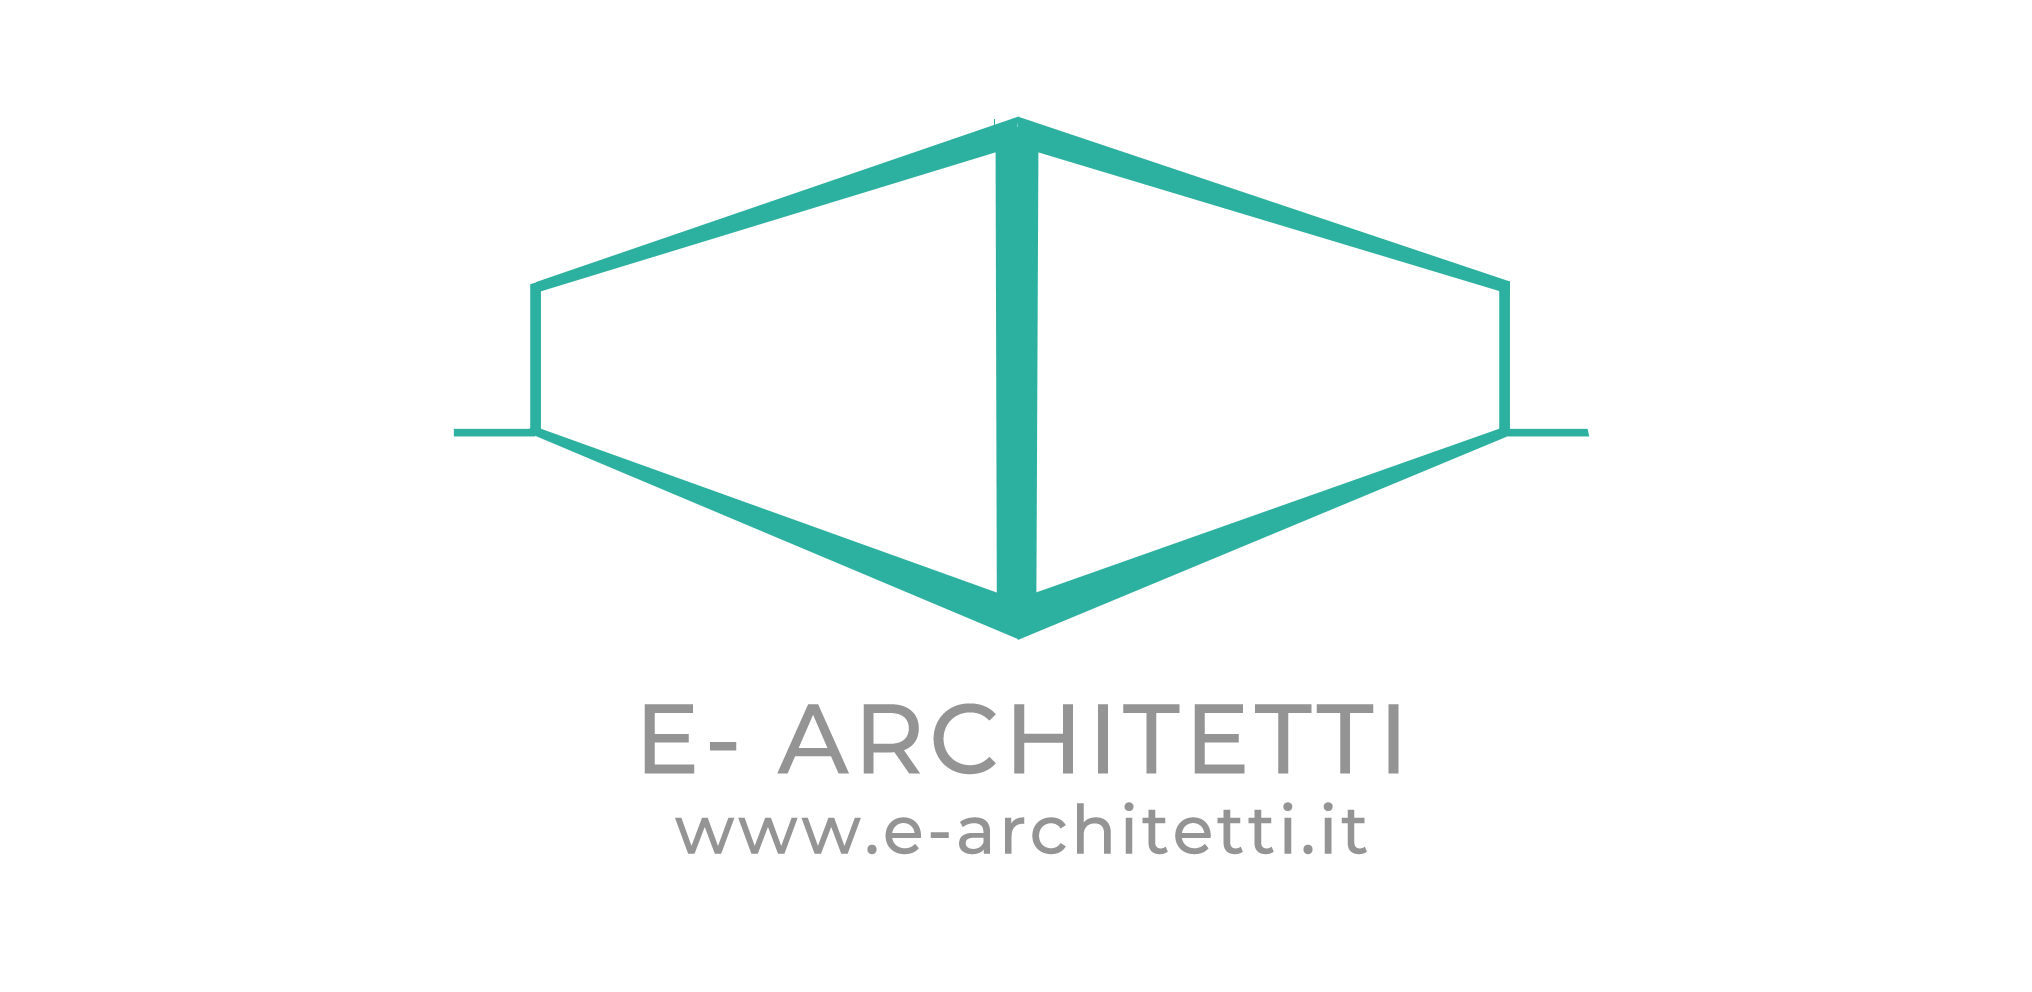 E-Architetti srl